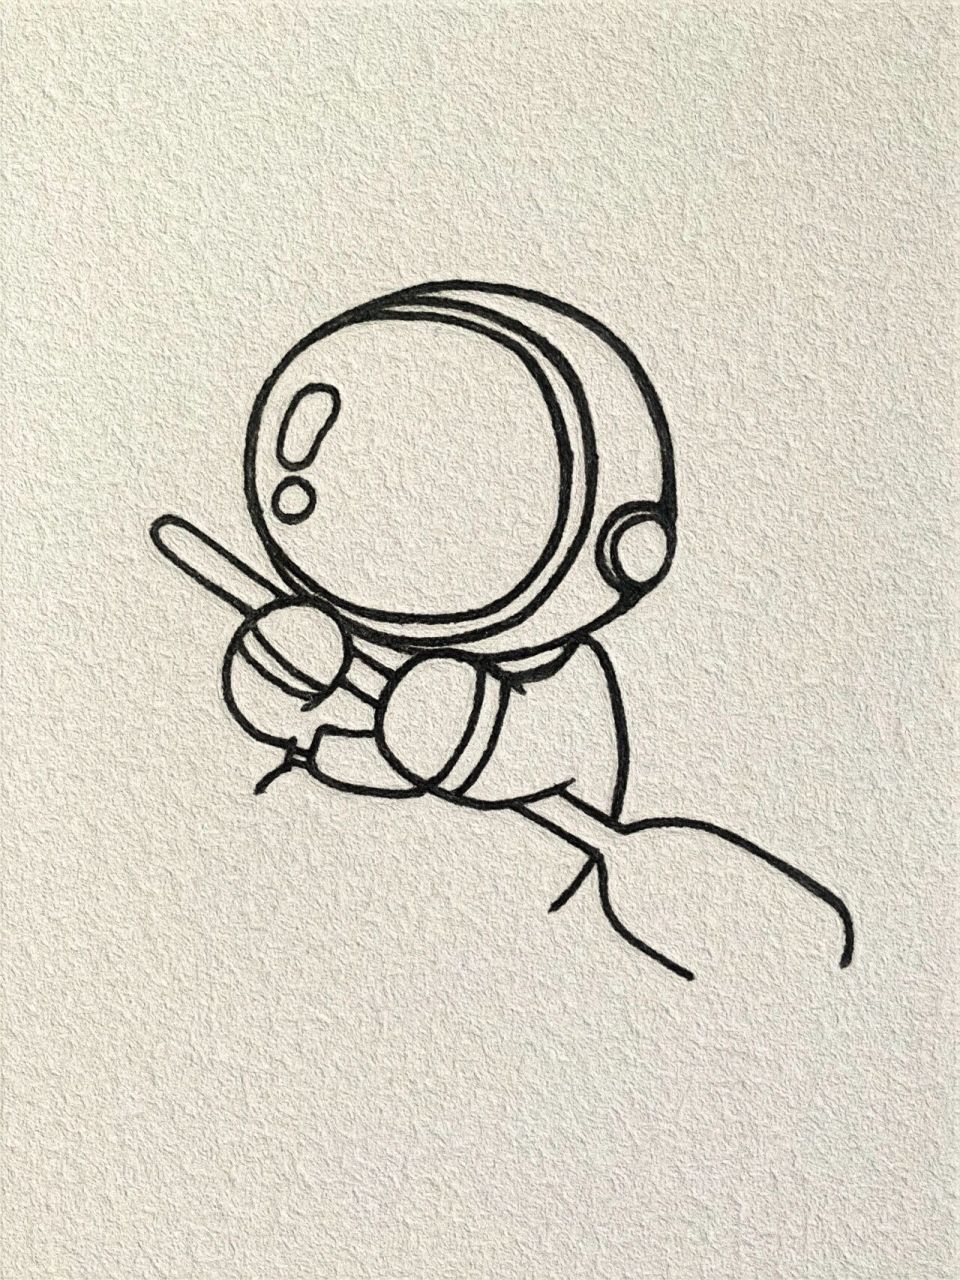 太空人物简笔画图片